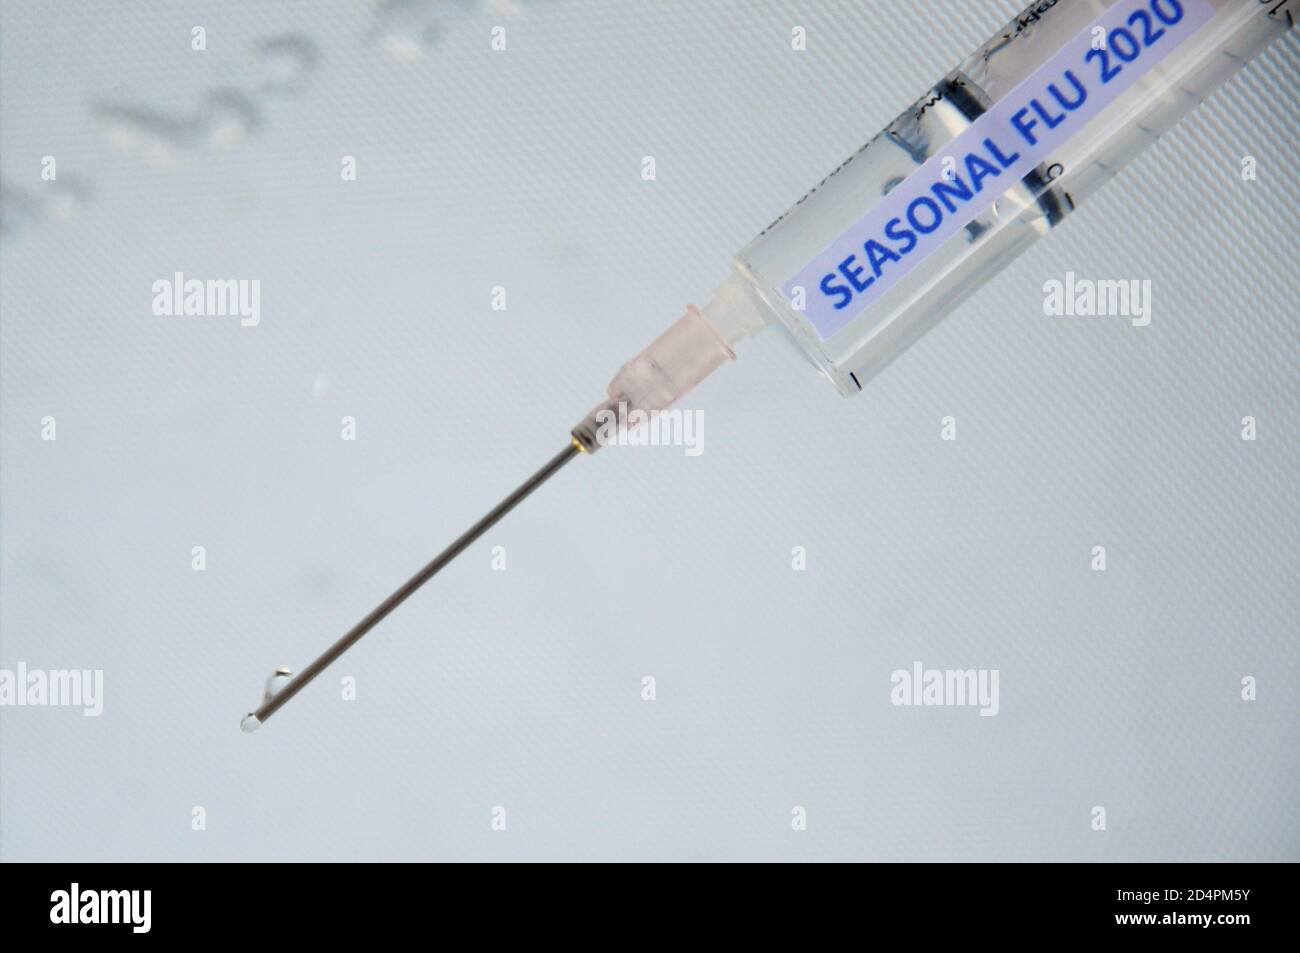 Portland. 10 octobre 2020. Grippe saisonnière, Royaume-Uni. Une seringue complète avec une étiquette portant la mention « SeASONAL FGRIPPE 2020 ». Crédit : stuart fretwell/Alamy Banque D'Images